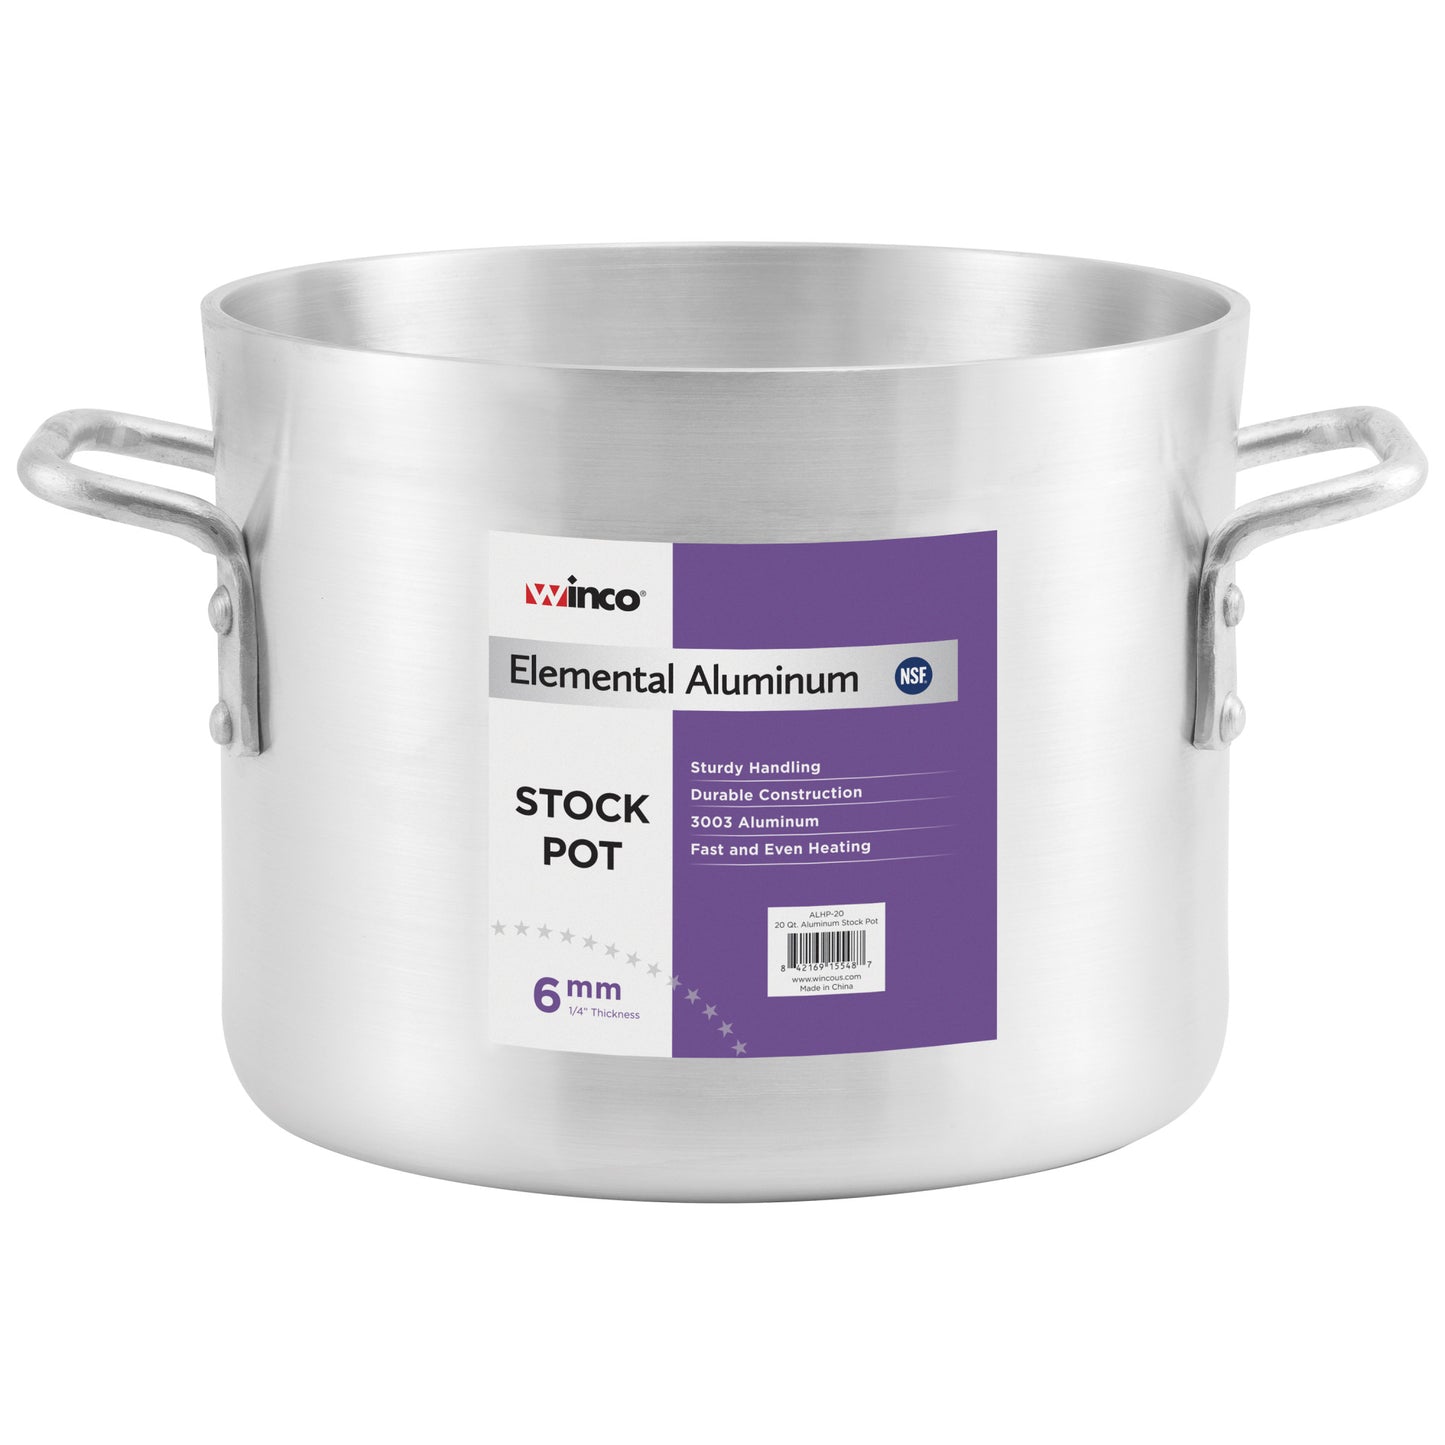 Elemental Aluminum Stock Pot, 6mm - 12 Quart